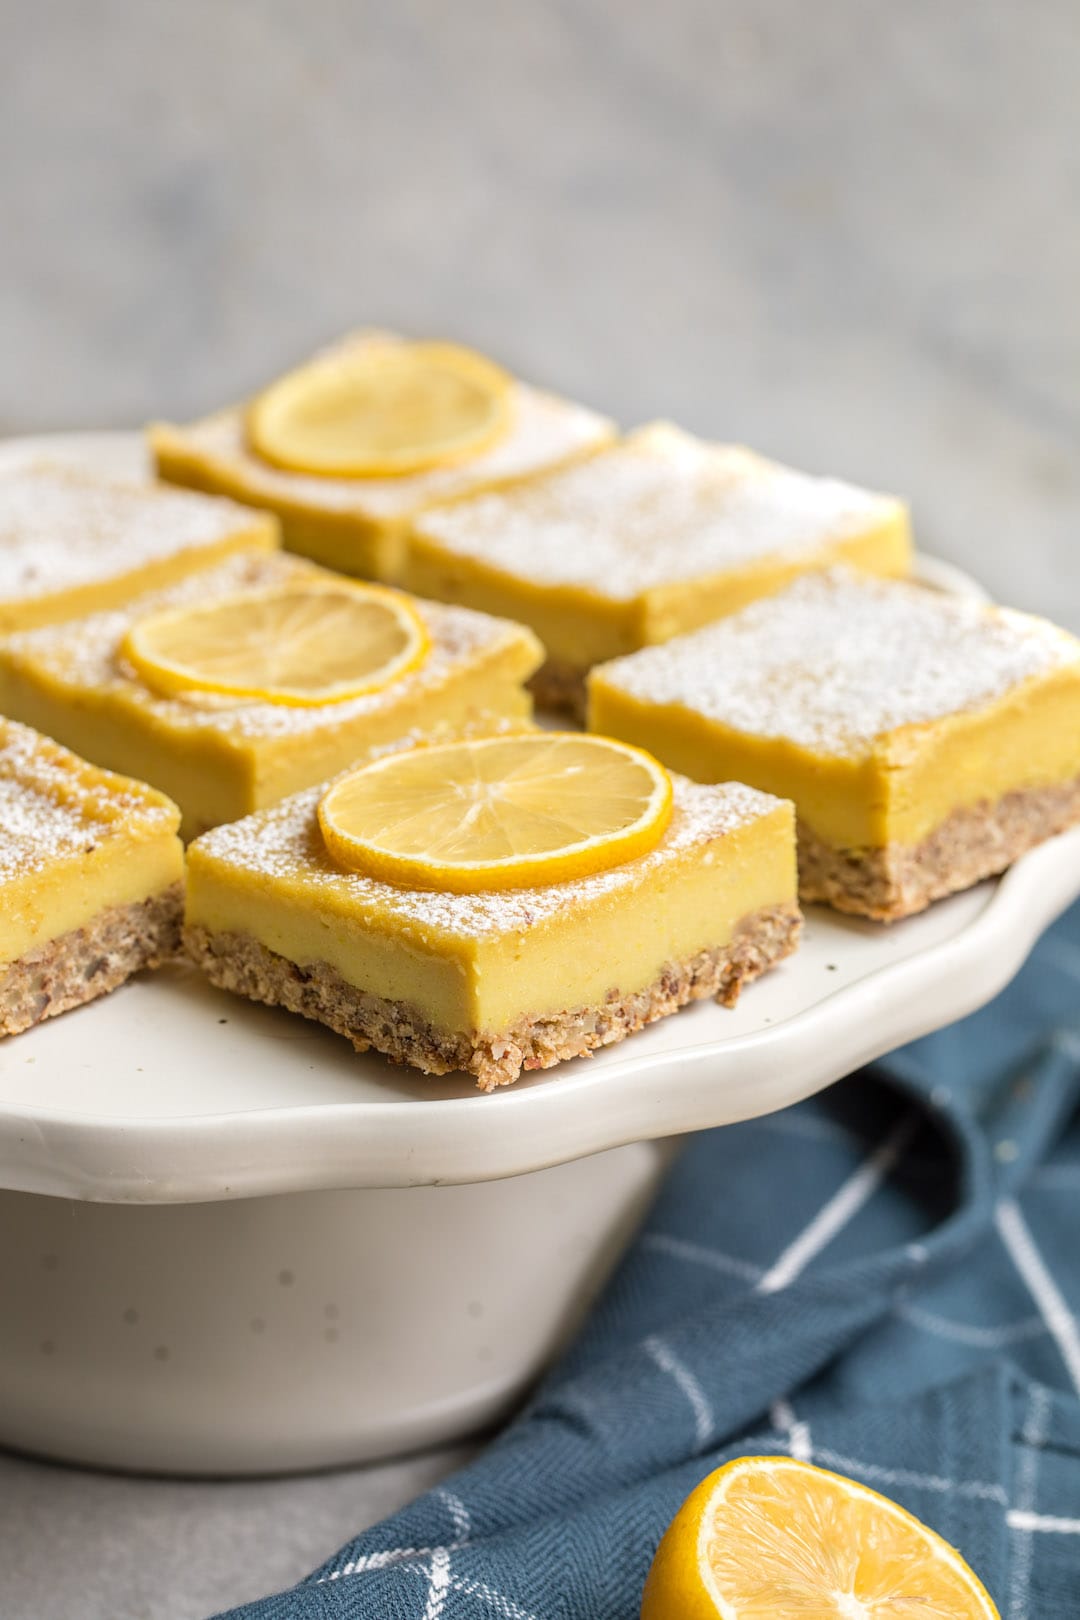 12 Super Easy Plant Based Desserts - Vegan Lemon Bars